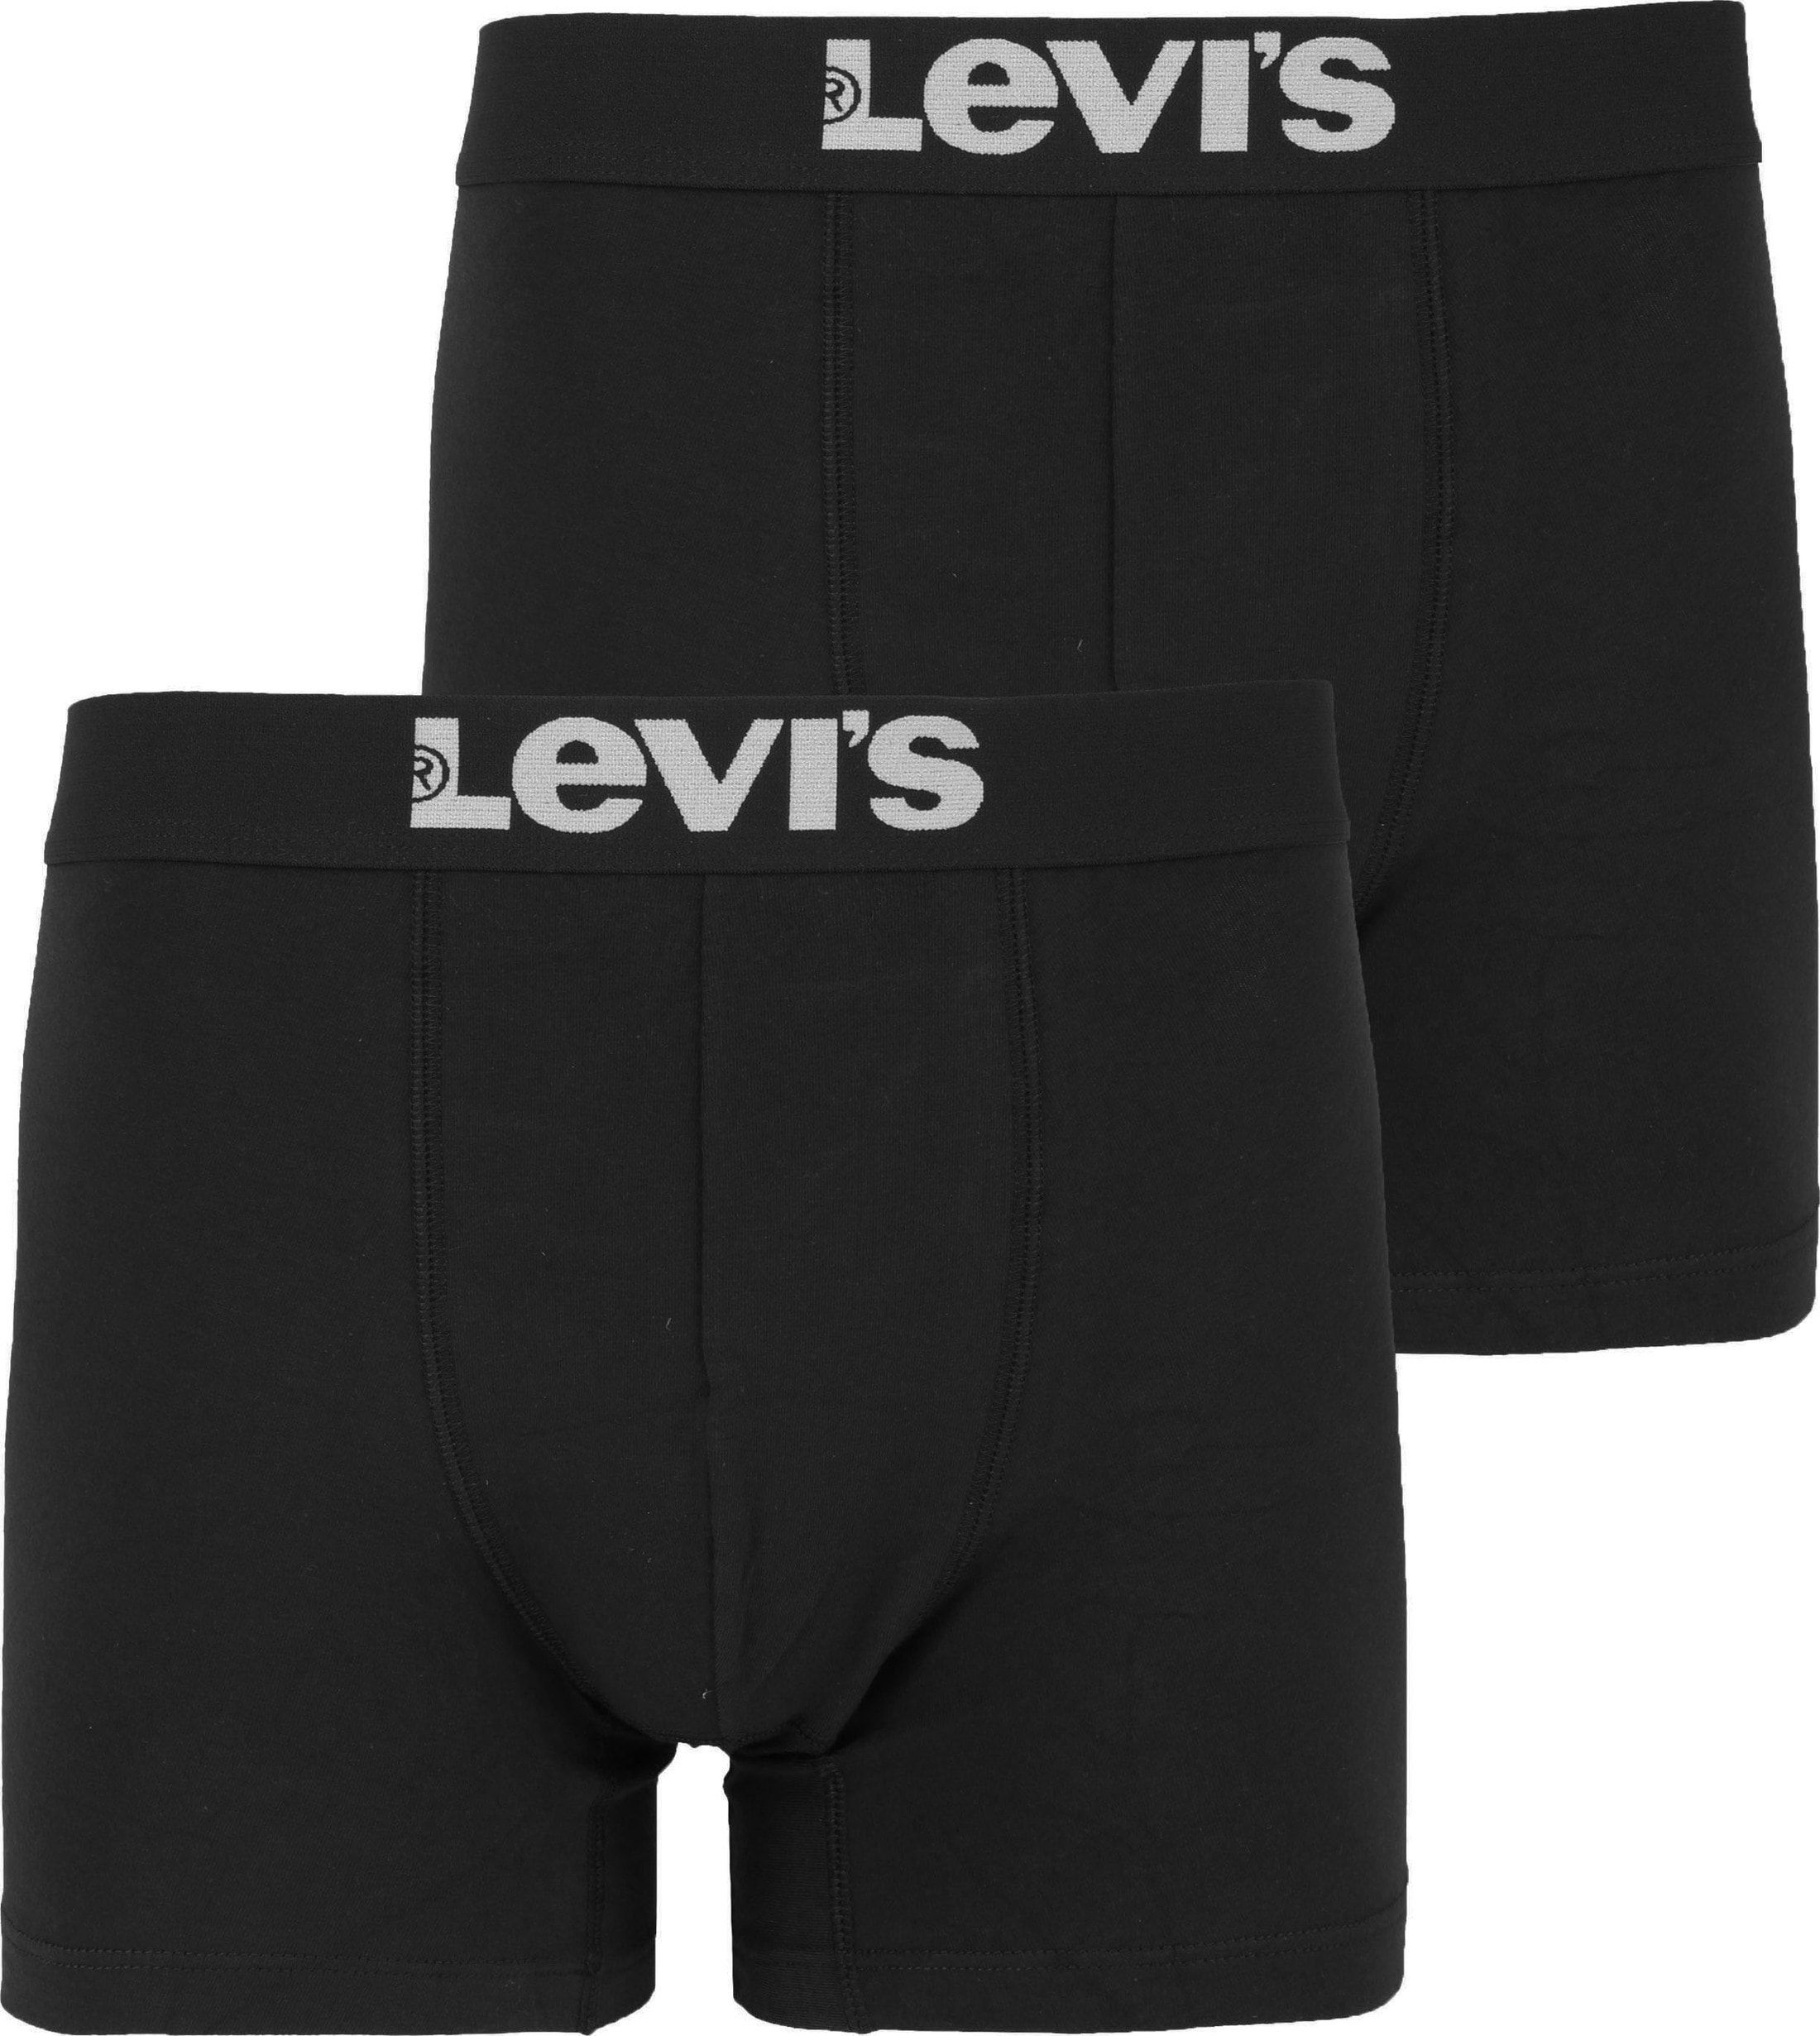 Levi's Boxershorts 2-Pack Uni Black size XXL